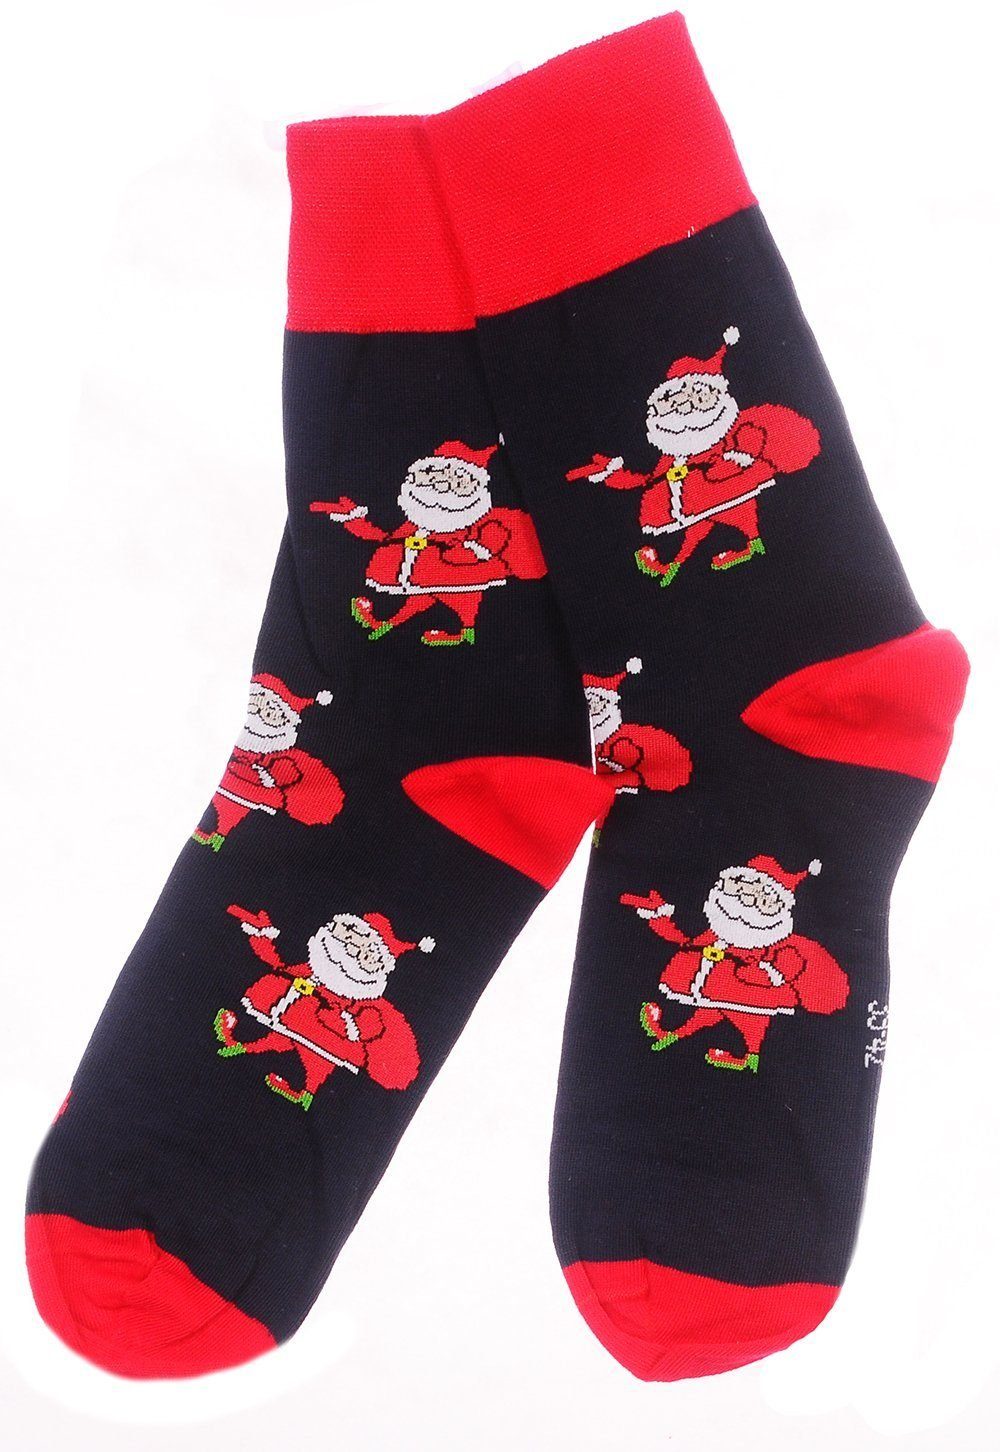 Martinex 38 35 schön, weihnachtlich Weihnachtssocken Socken 46 39 42 1 Paar Strümpfe bunt, BLau_Santa 43 Socken